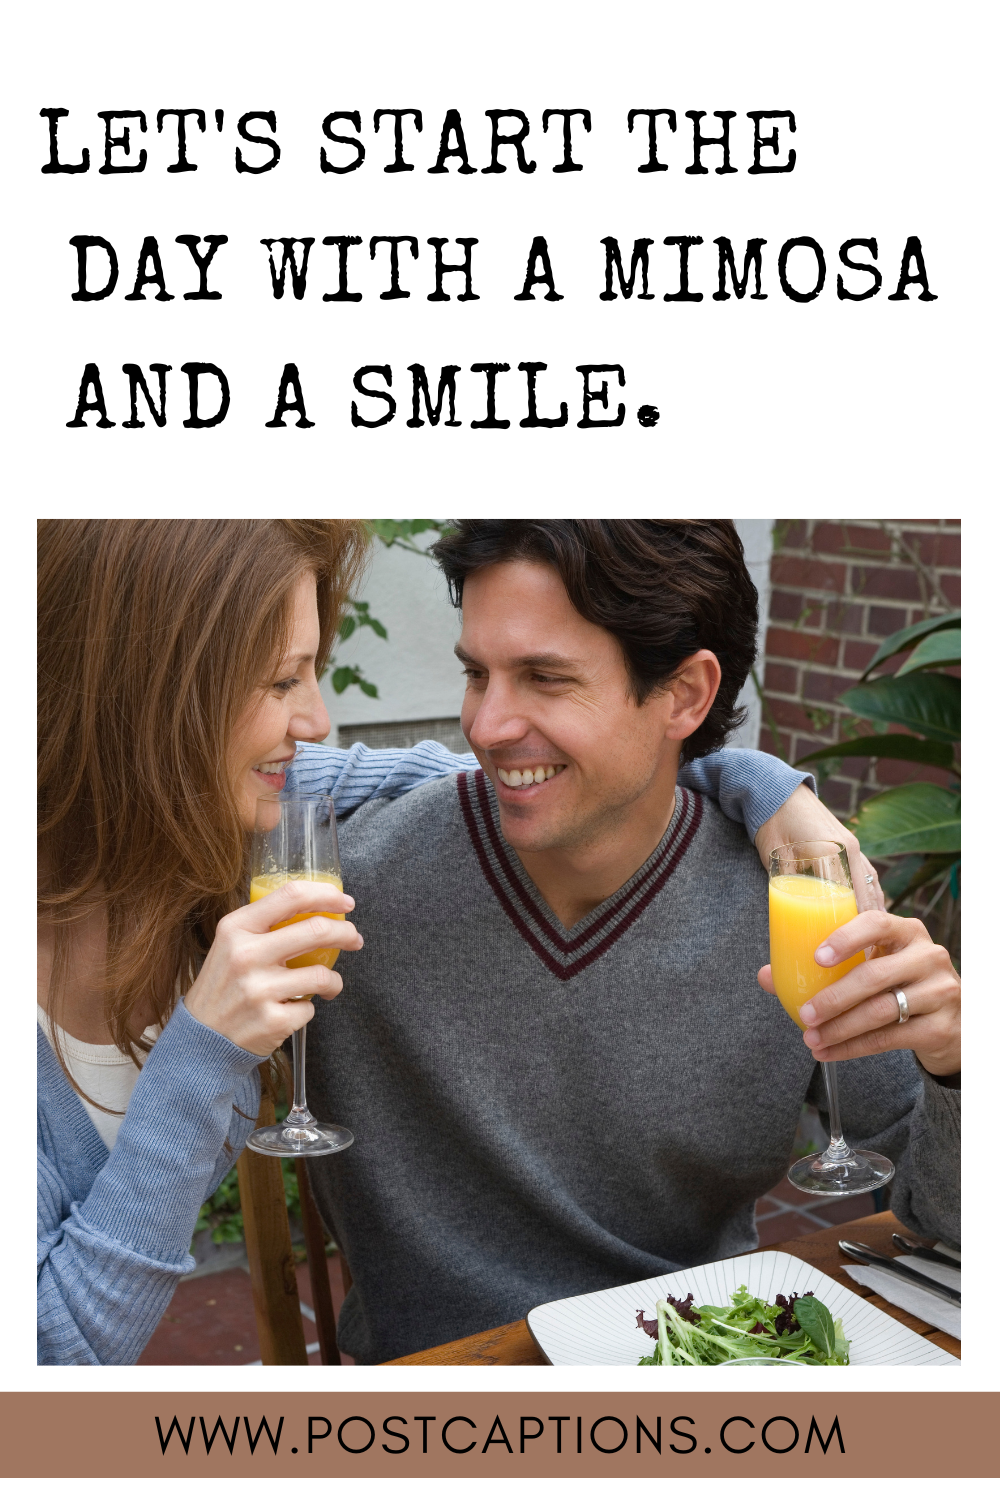 Mimosa captions